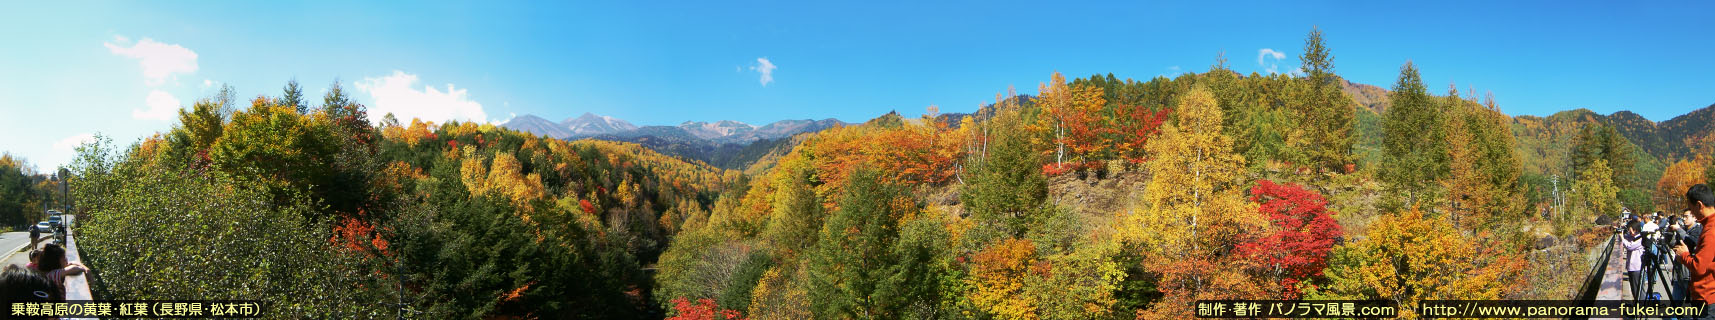 乗鞍高原の黄葉・紅葉のパノラマ風景写真